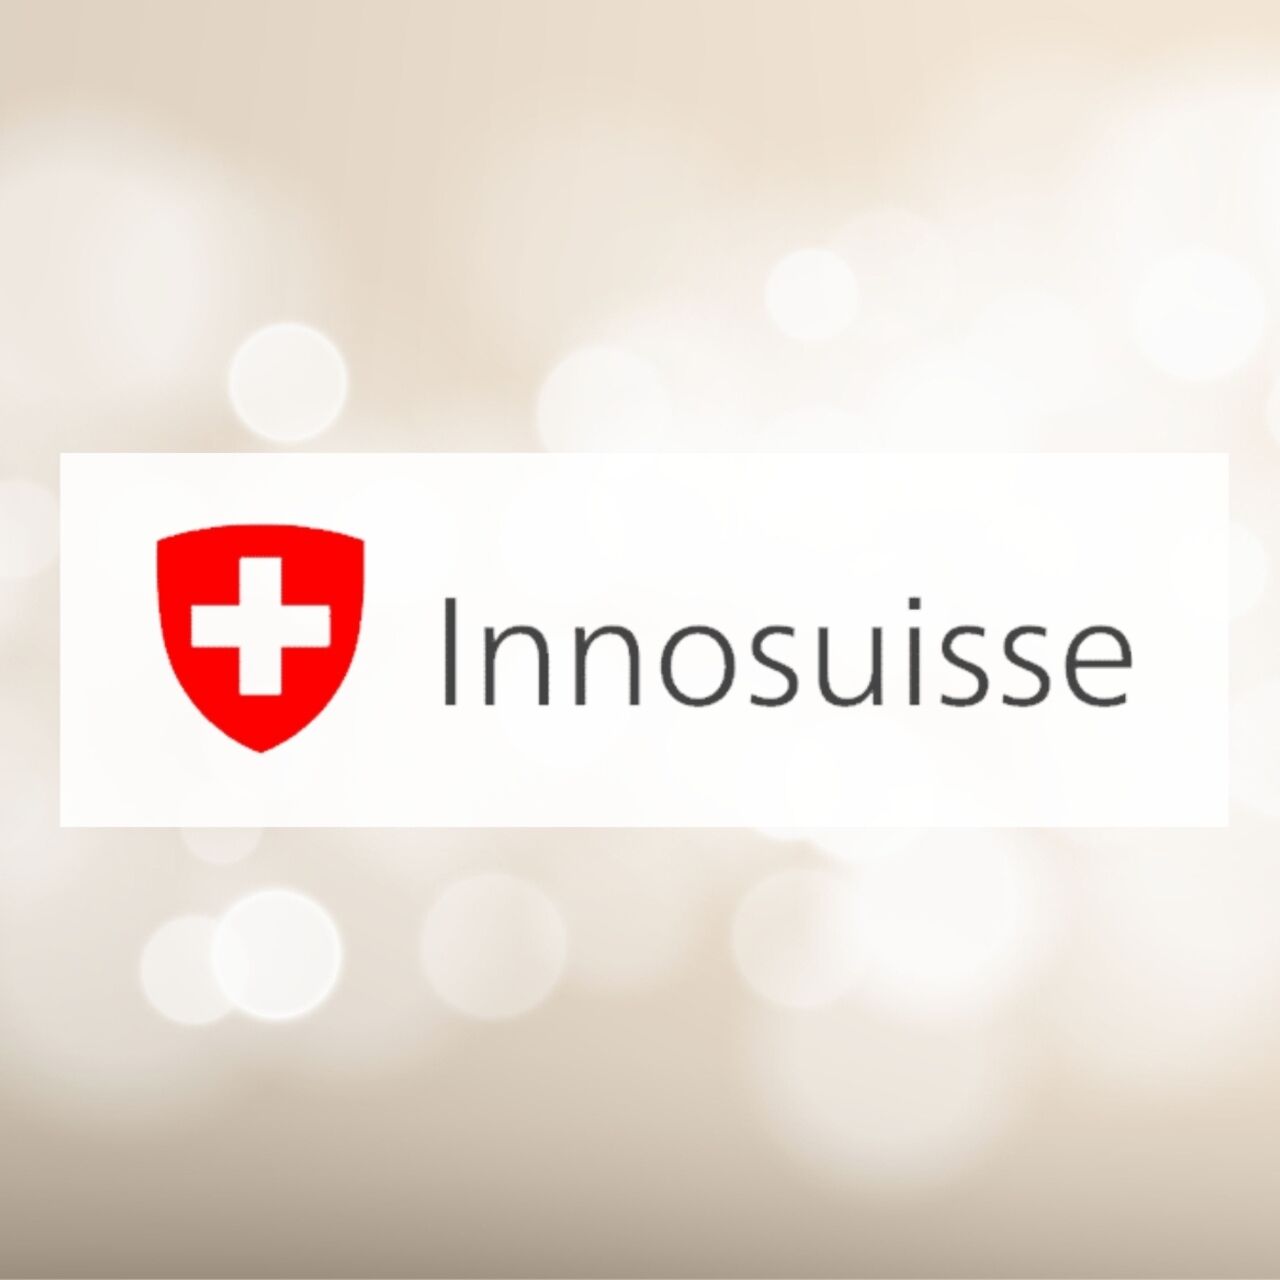 Innosisse: Švýcarská agentura pro podporu inovací